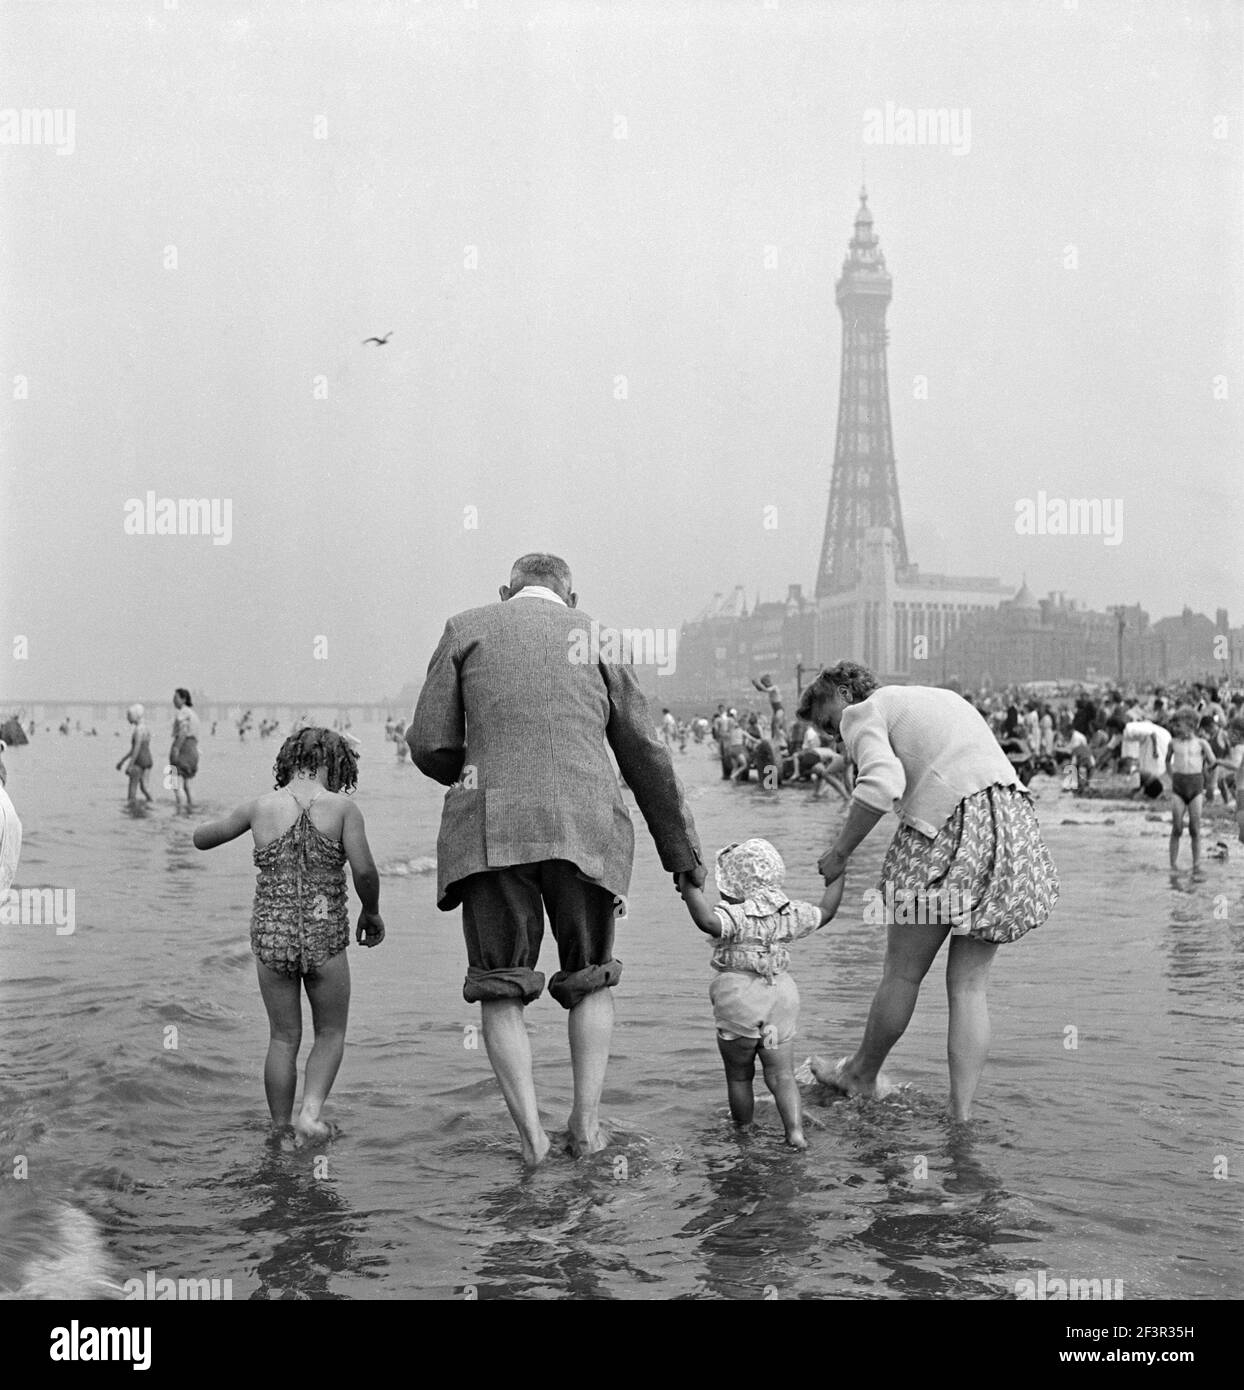 BLACKPOOL, Lancashire. Retrato informal que muestra la vista trasera de una familia con dos hijas remando en el mar, con la Torre Blackpool en la parte trasera Foto de stock